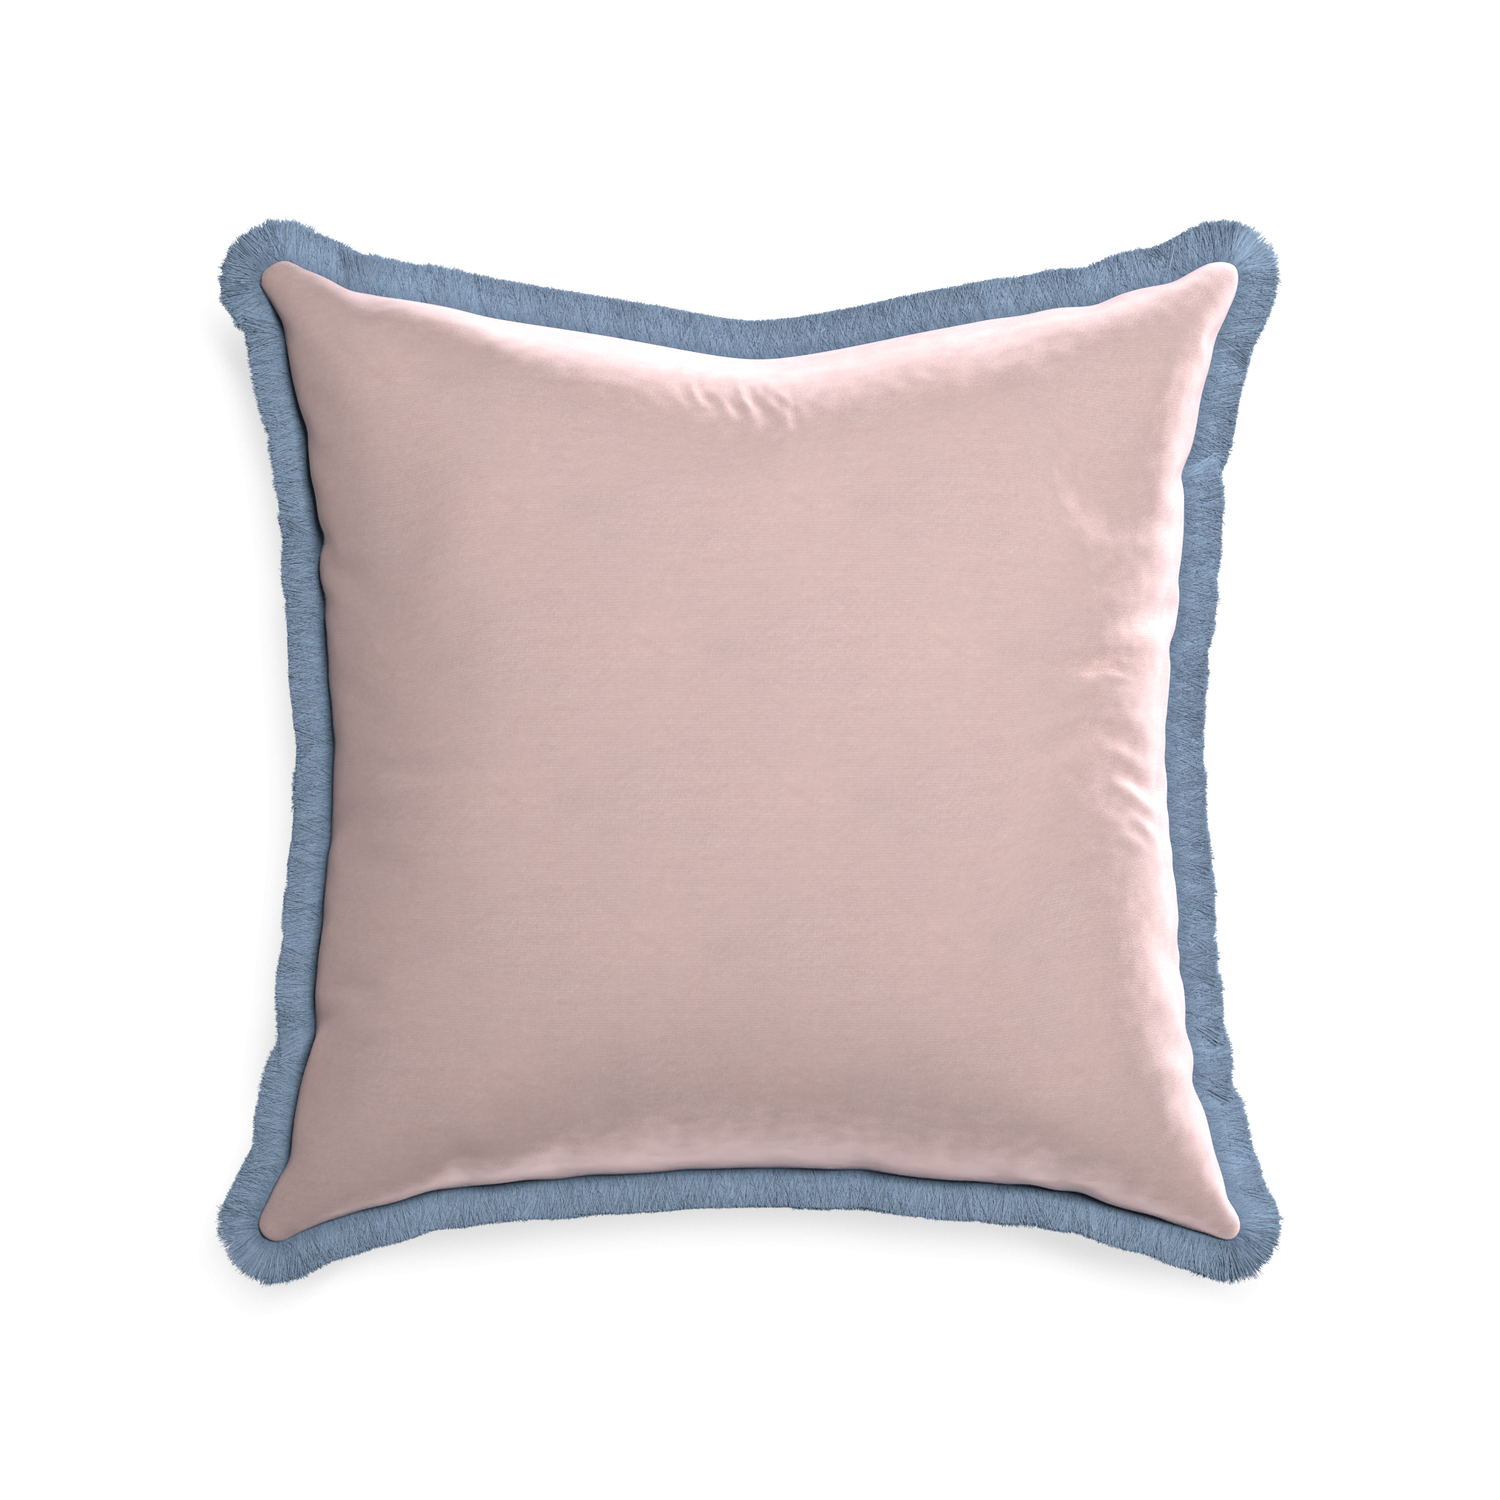 22-square rose velvet custom pillow with sky fringe on white background